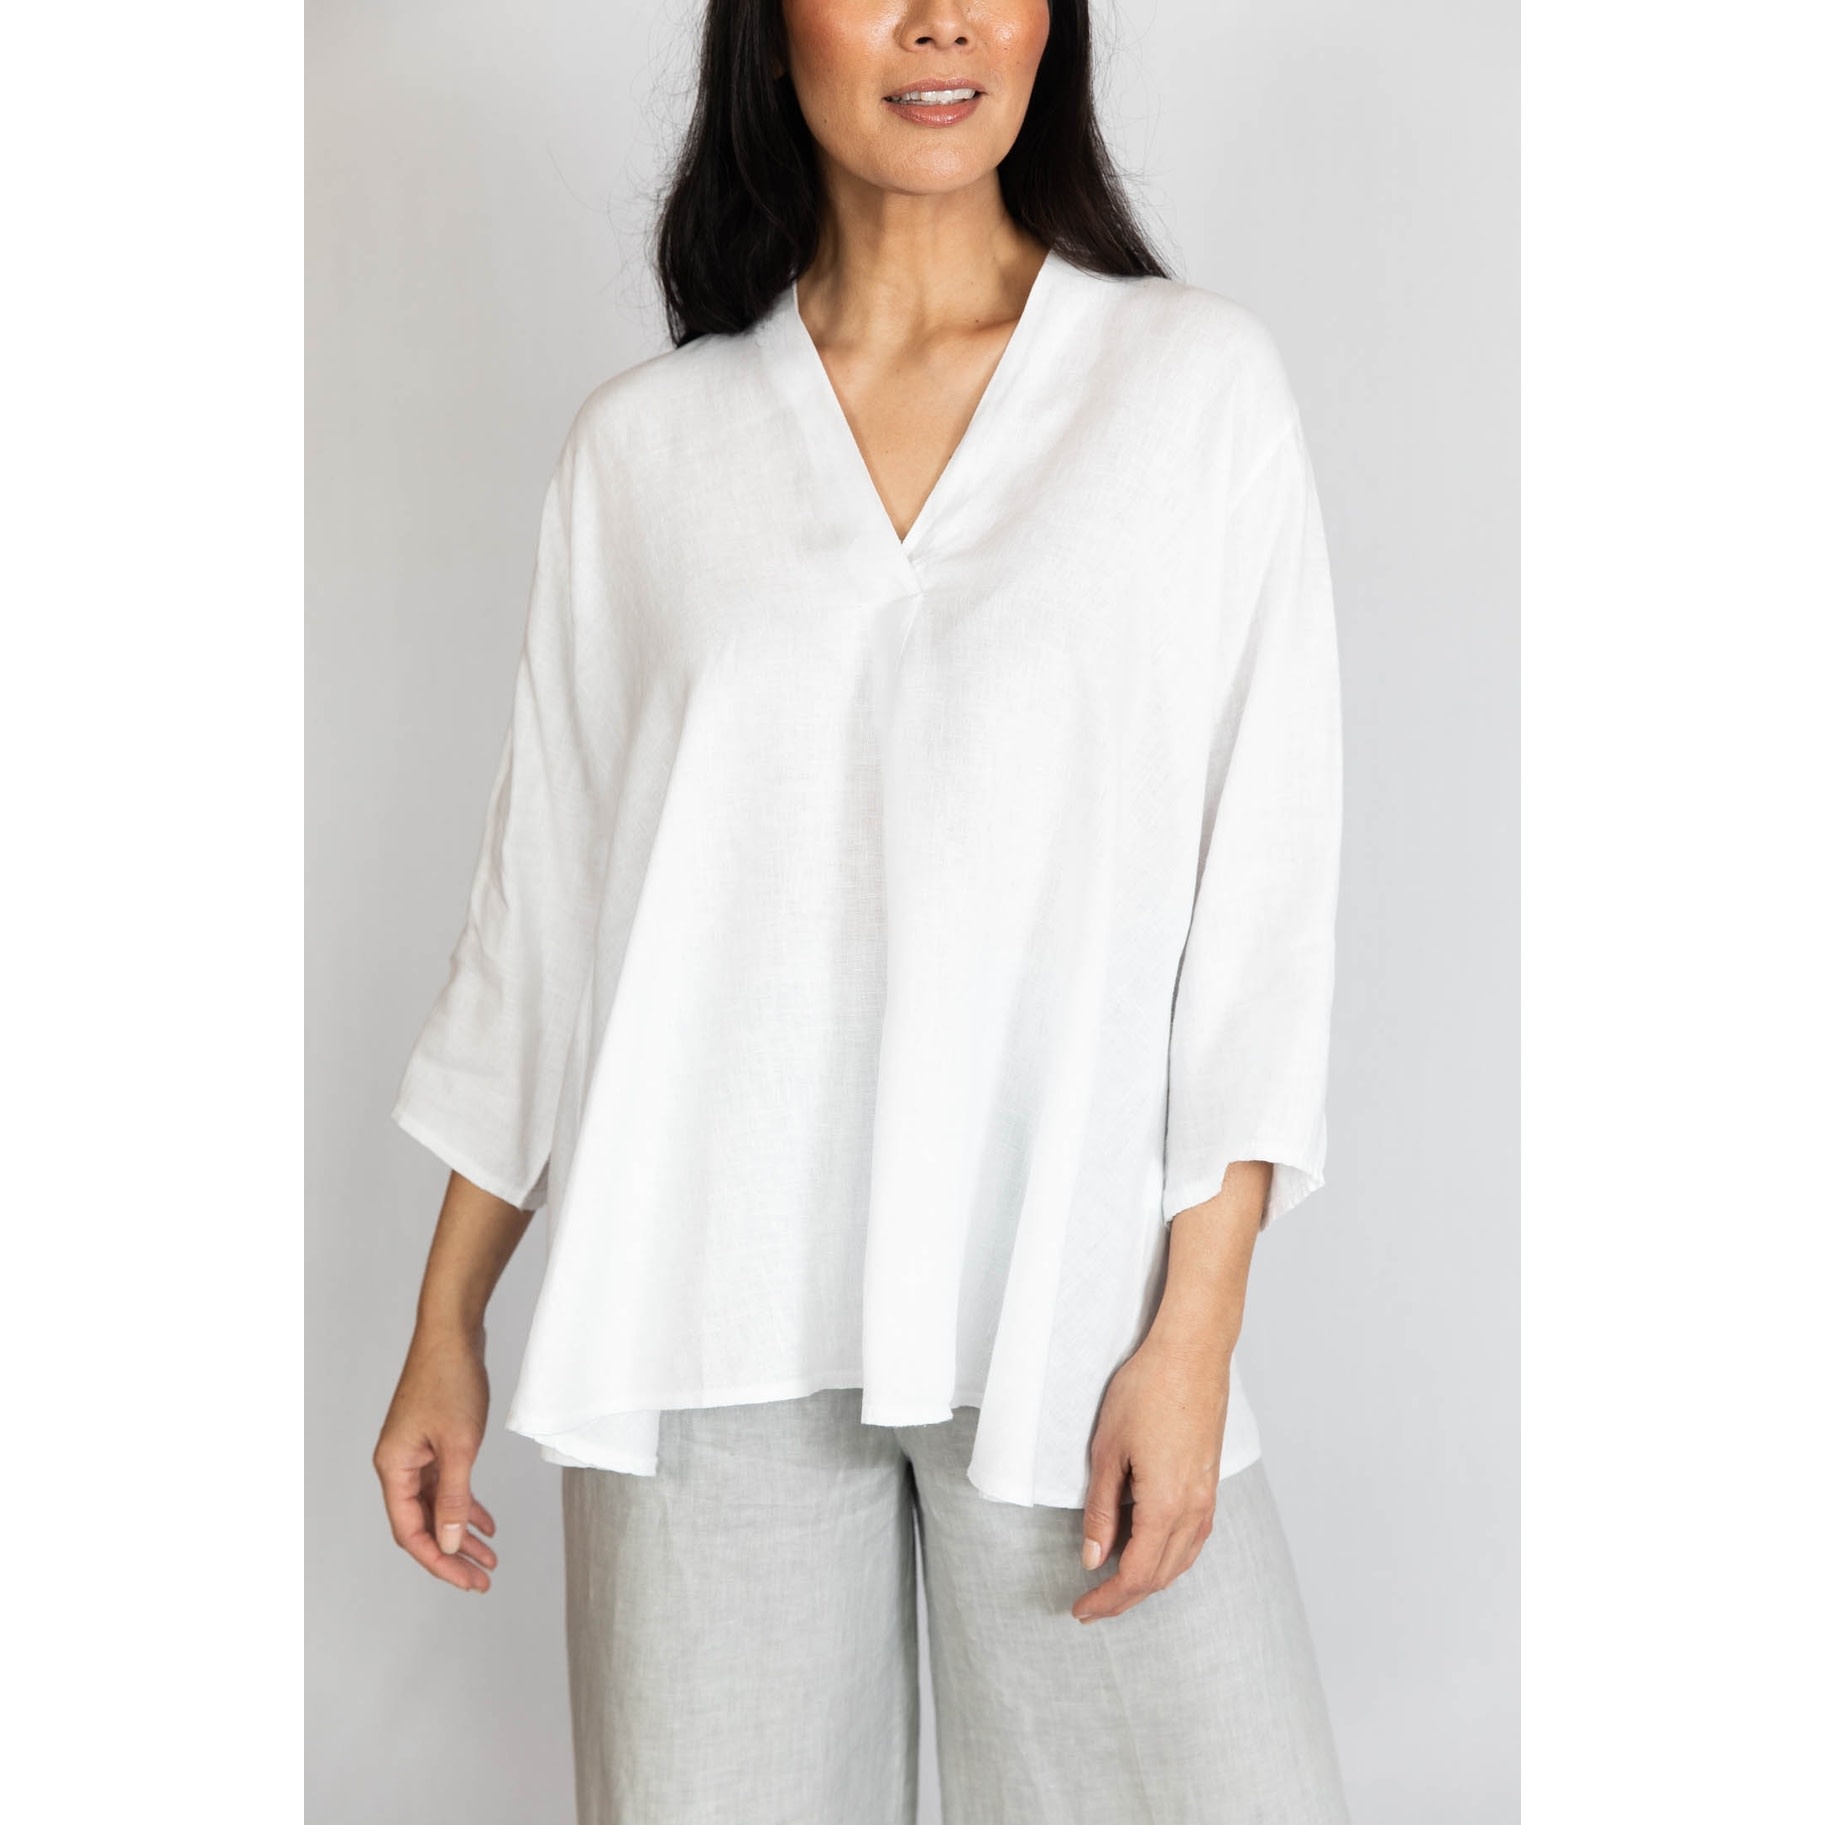 Cobblestone Living Gina - V-Neck Linen: White One Size